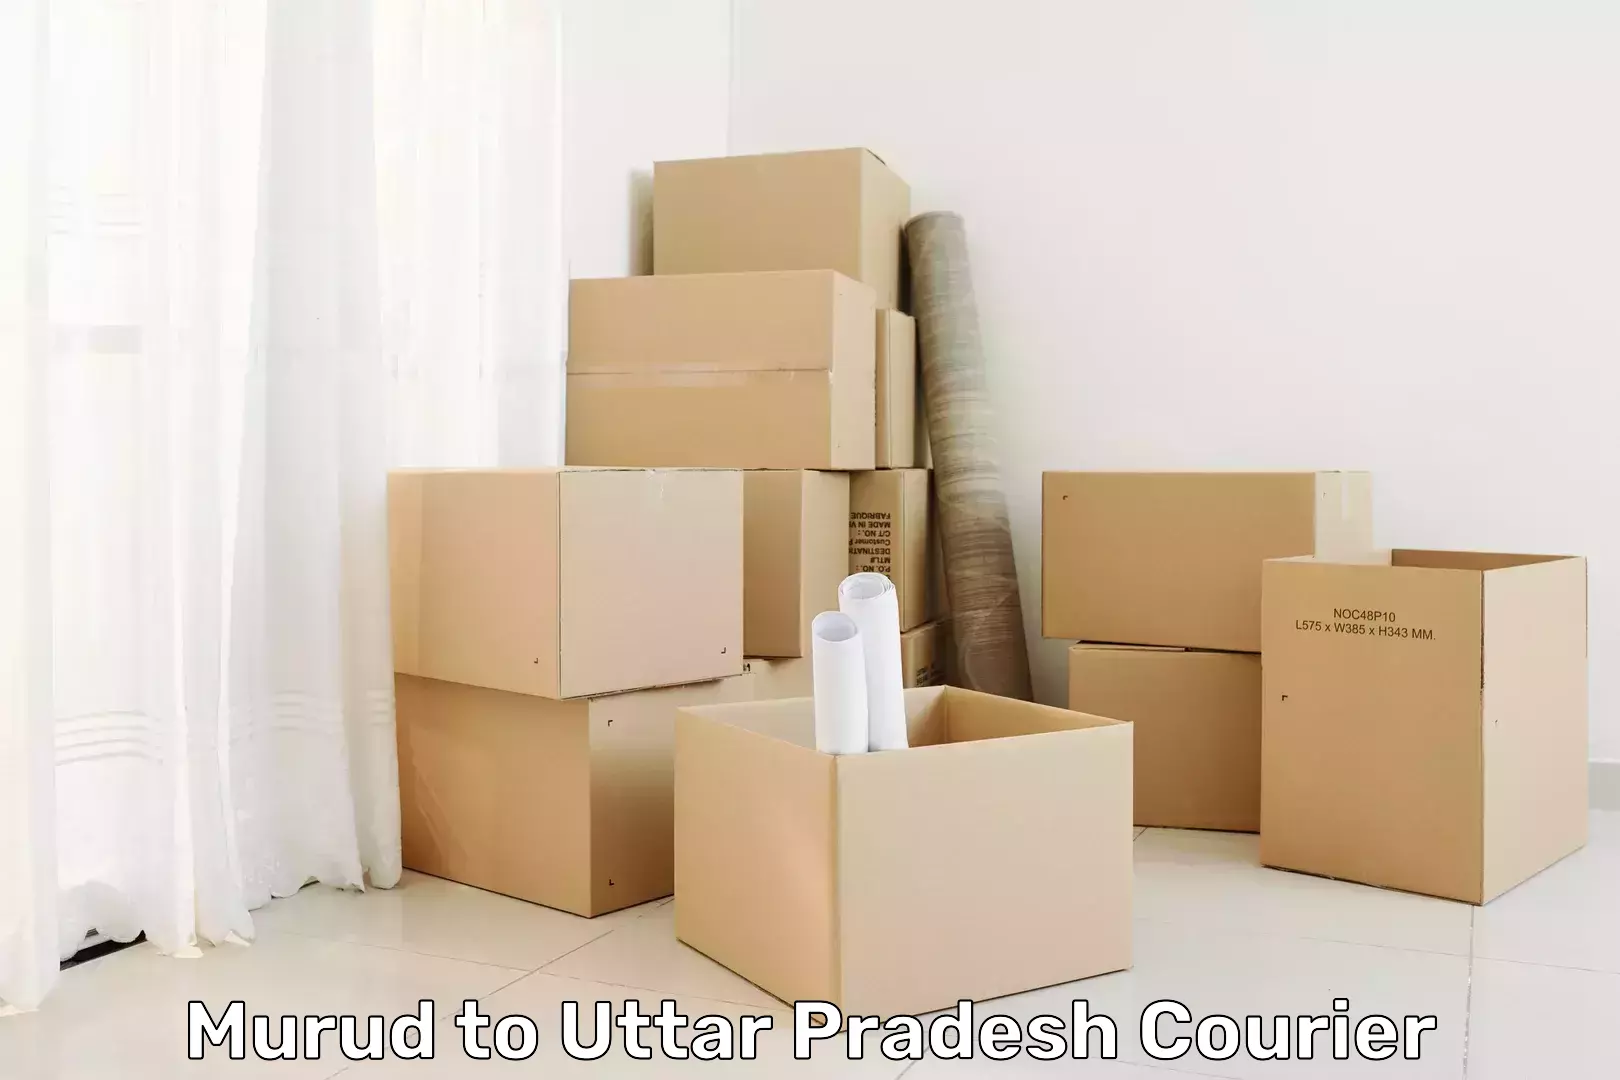 Global logistics network Murud to Uttar Pradesh